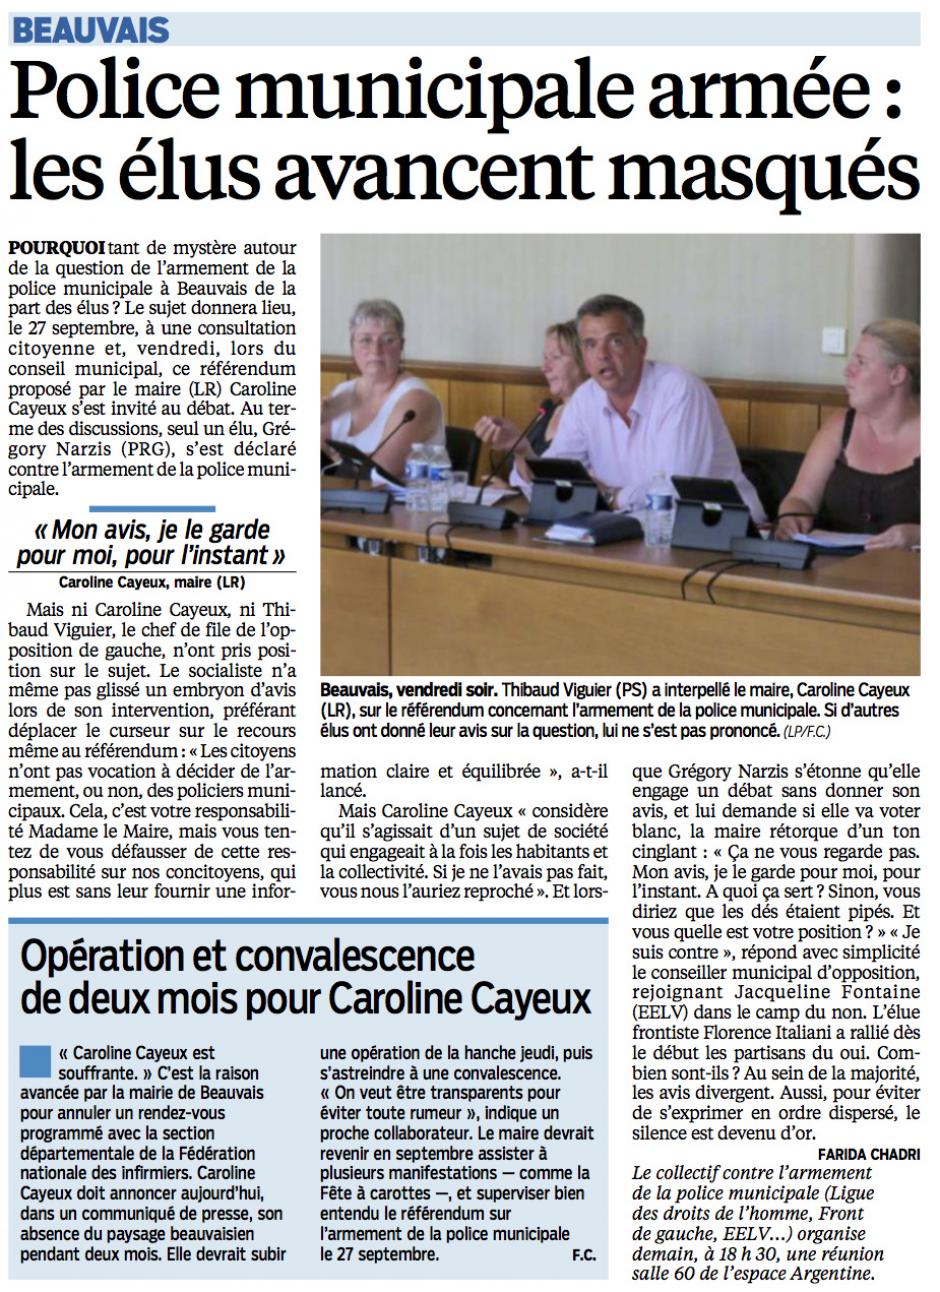 20150706-LeP-Beauvais-Police municipale armée : les élus avancent masqués